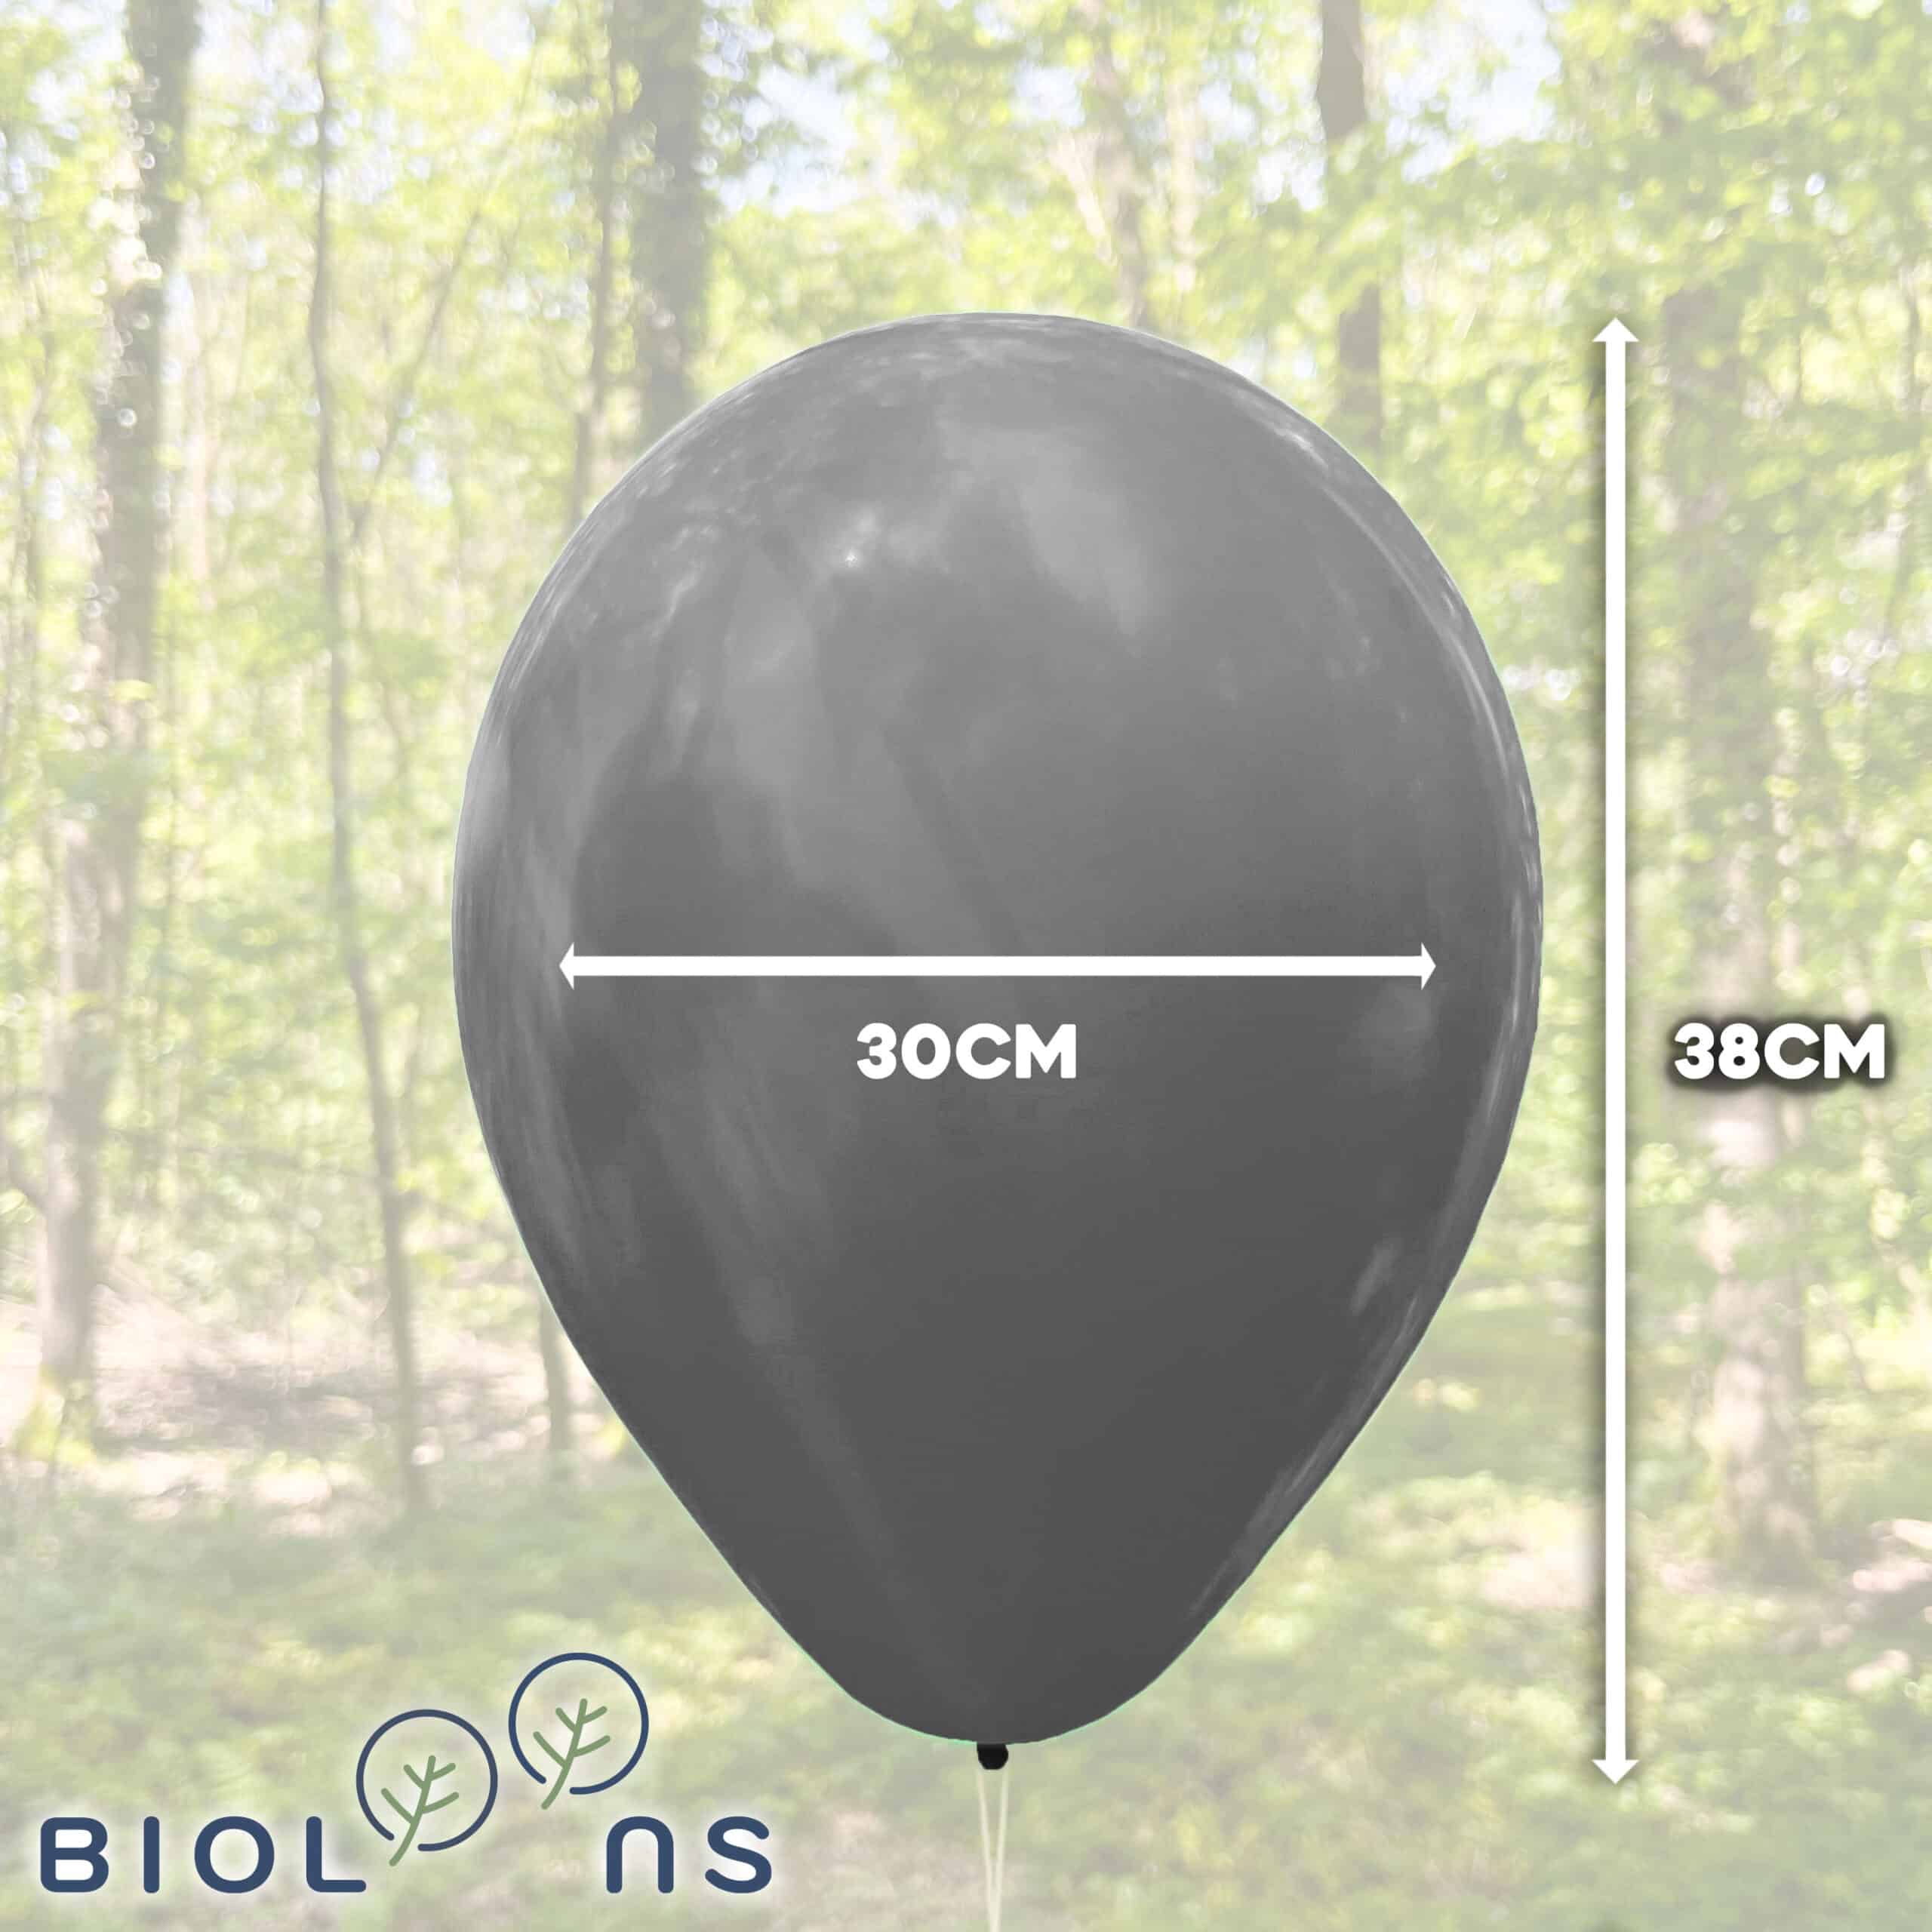 Bio Luftballons Bioloons® 30cm Happy New Year  25 Stück - silber, gold und schwarz - Silvester